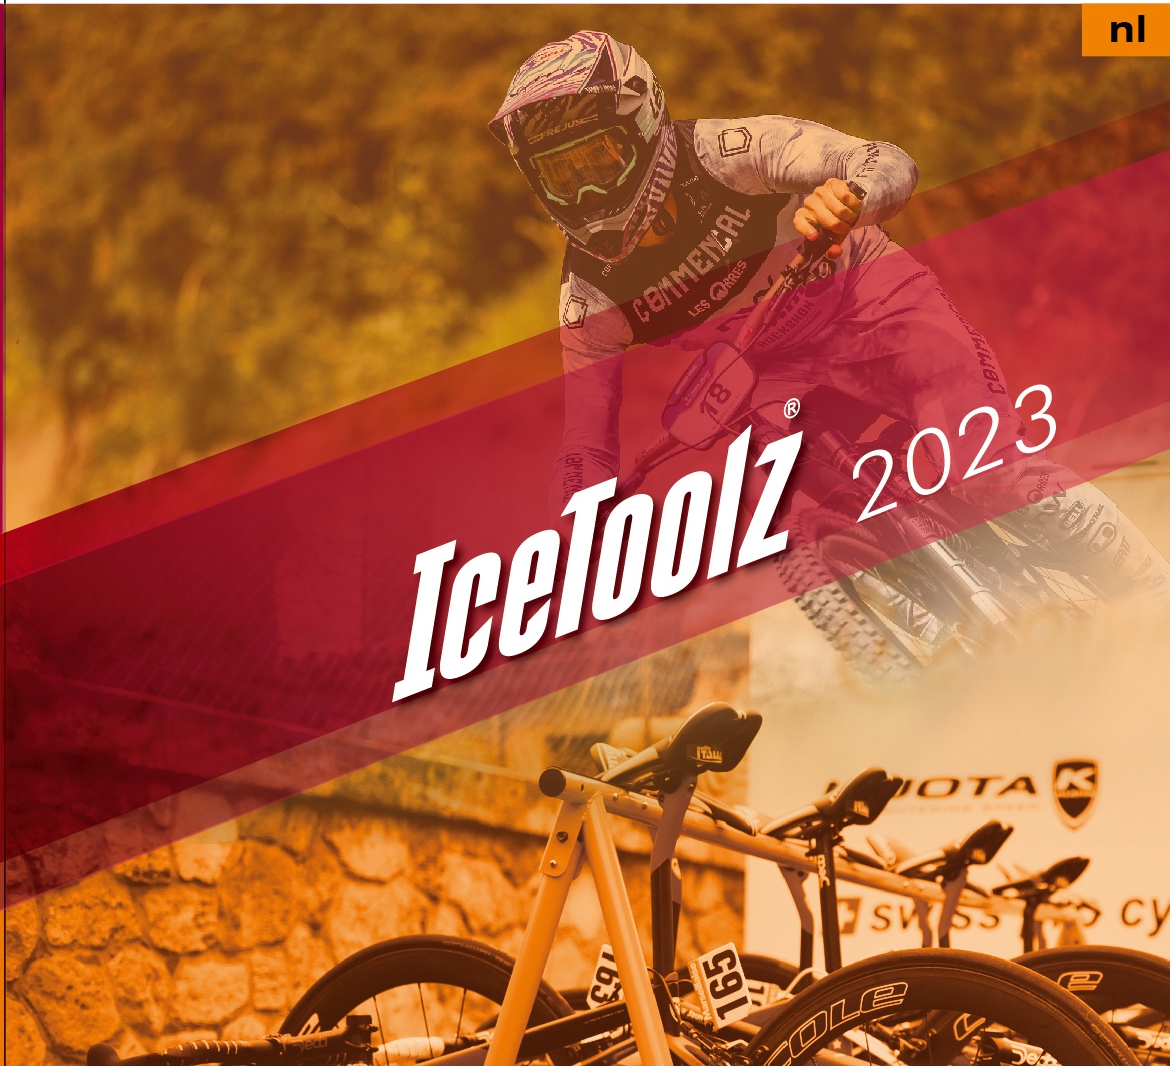 Icetoolz catalogus 2023